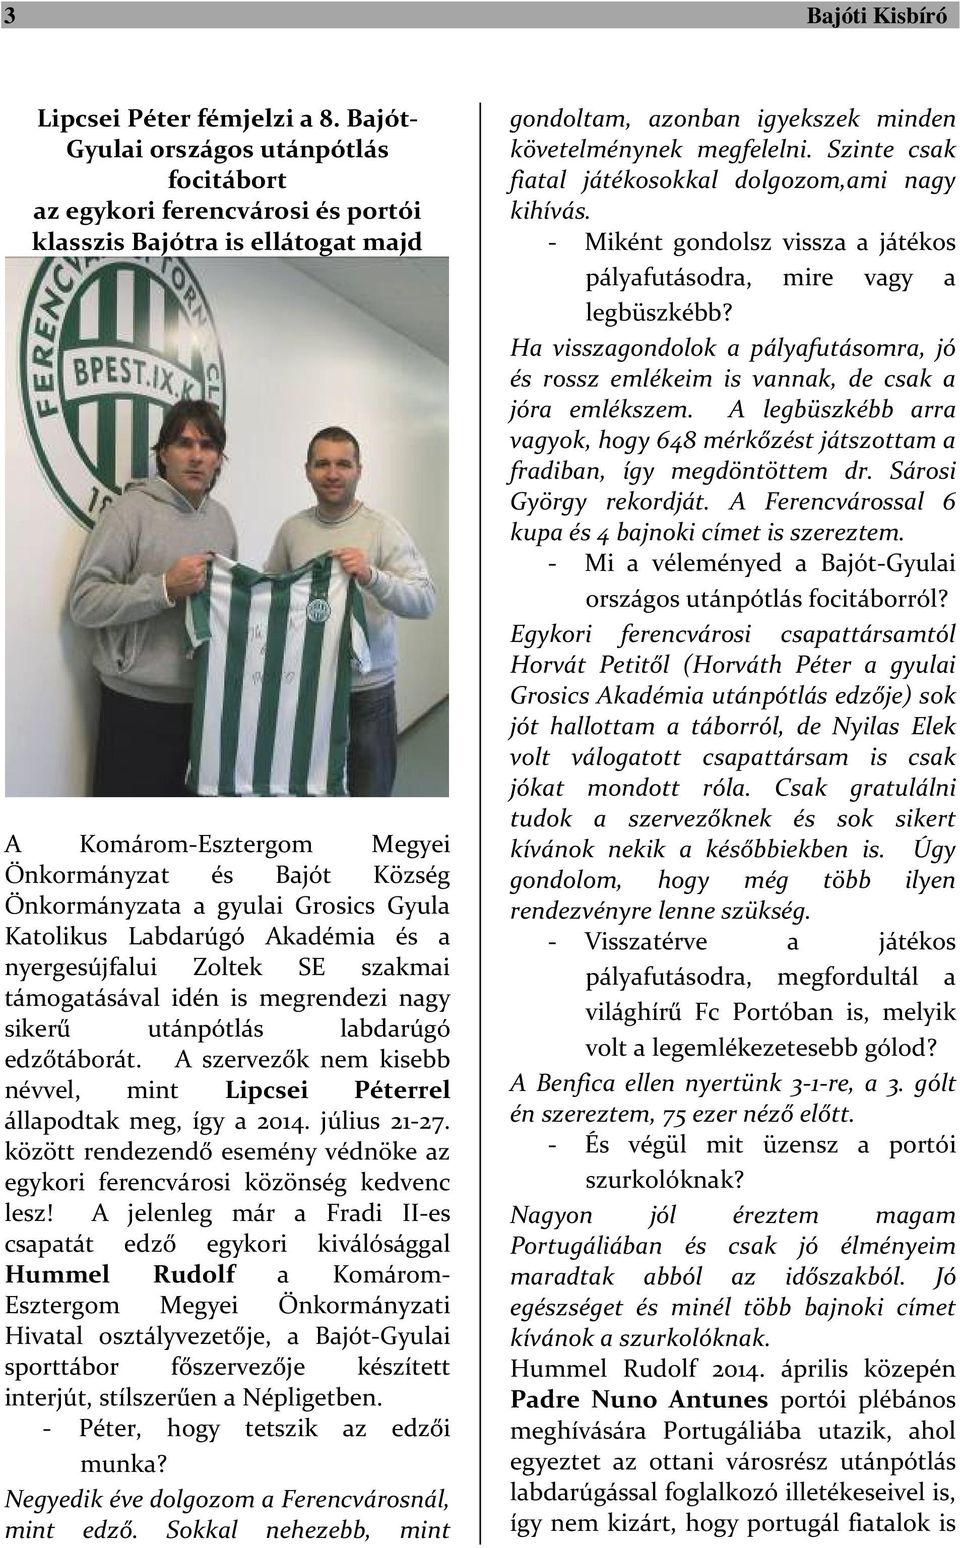 Grosics Gyula Katolikus Labdarúgó Akadémia és a nyergesújfalui Zoltek SE szakmai támogatásával idén is megrendezi nagy sikerű utánpótlás labdarúgó edzőtáborát.